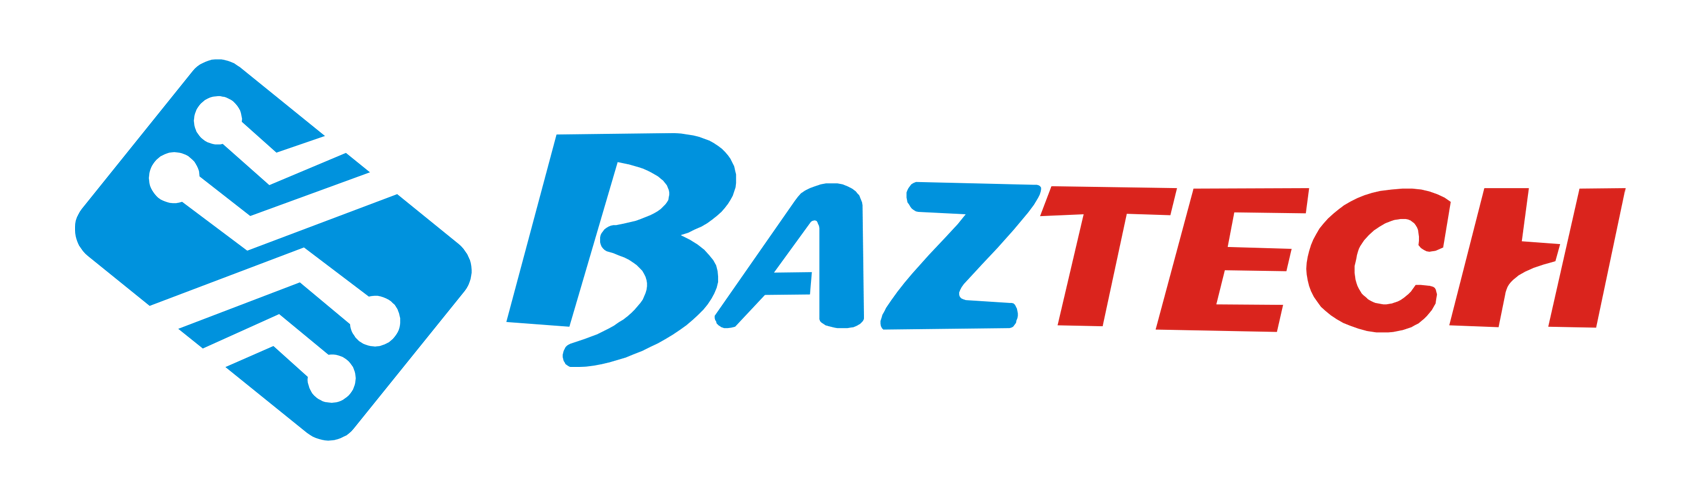 Baztech logo (horizontal) trns bckgrnd